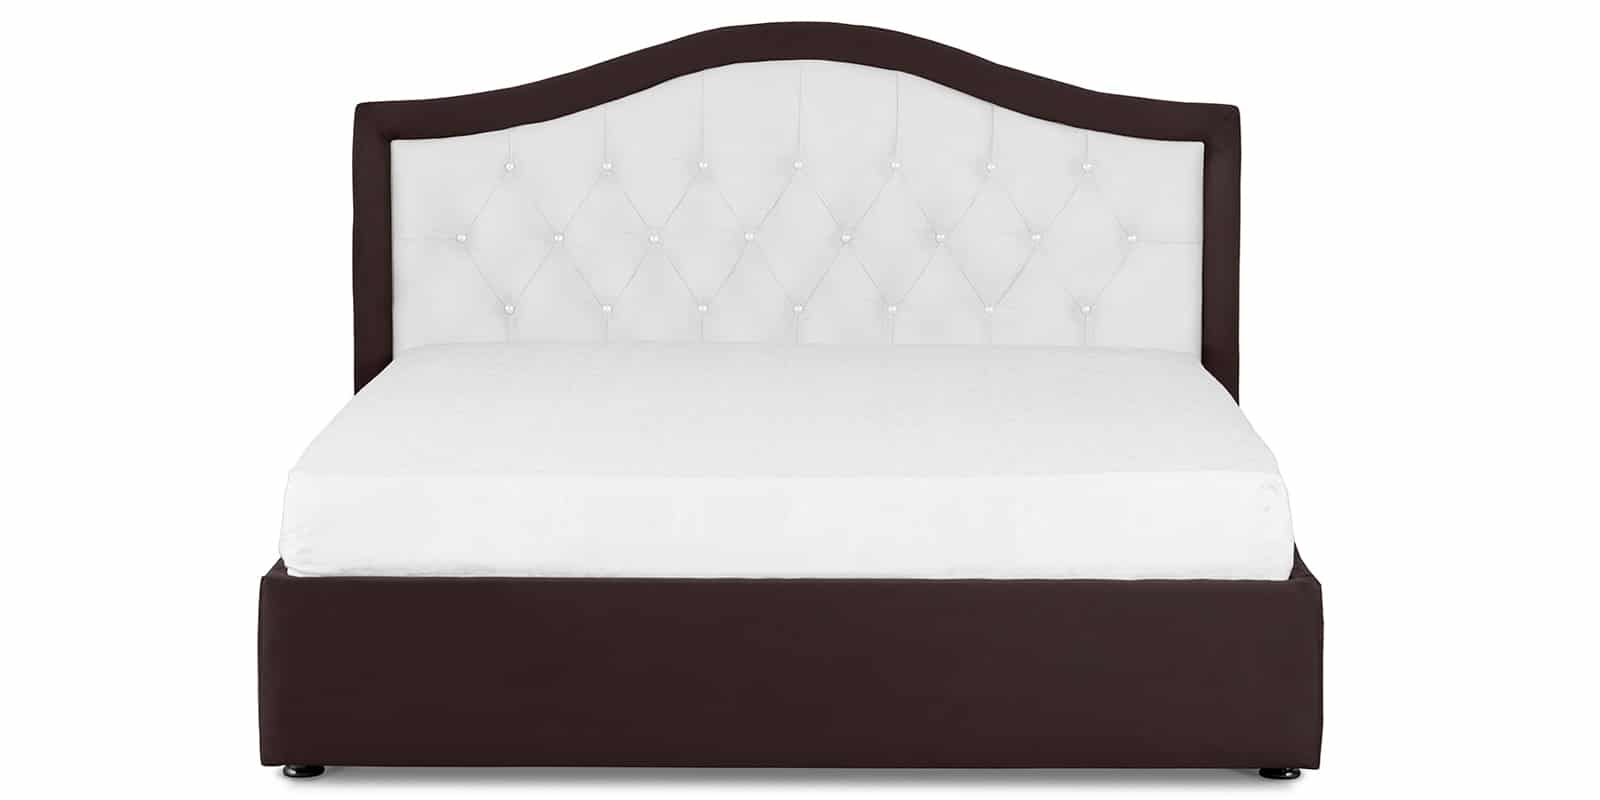 Мягкая кровать Малибу 160 см экокожа белый-шоколад вариант 9 фото 3 | интернет-магазин Складно